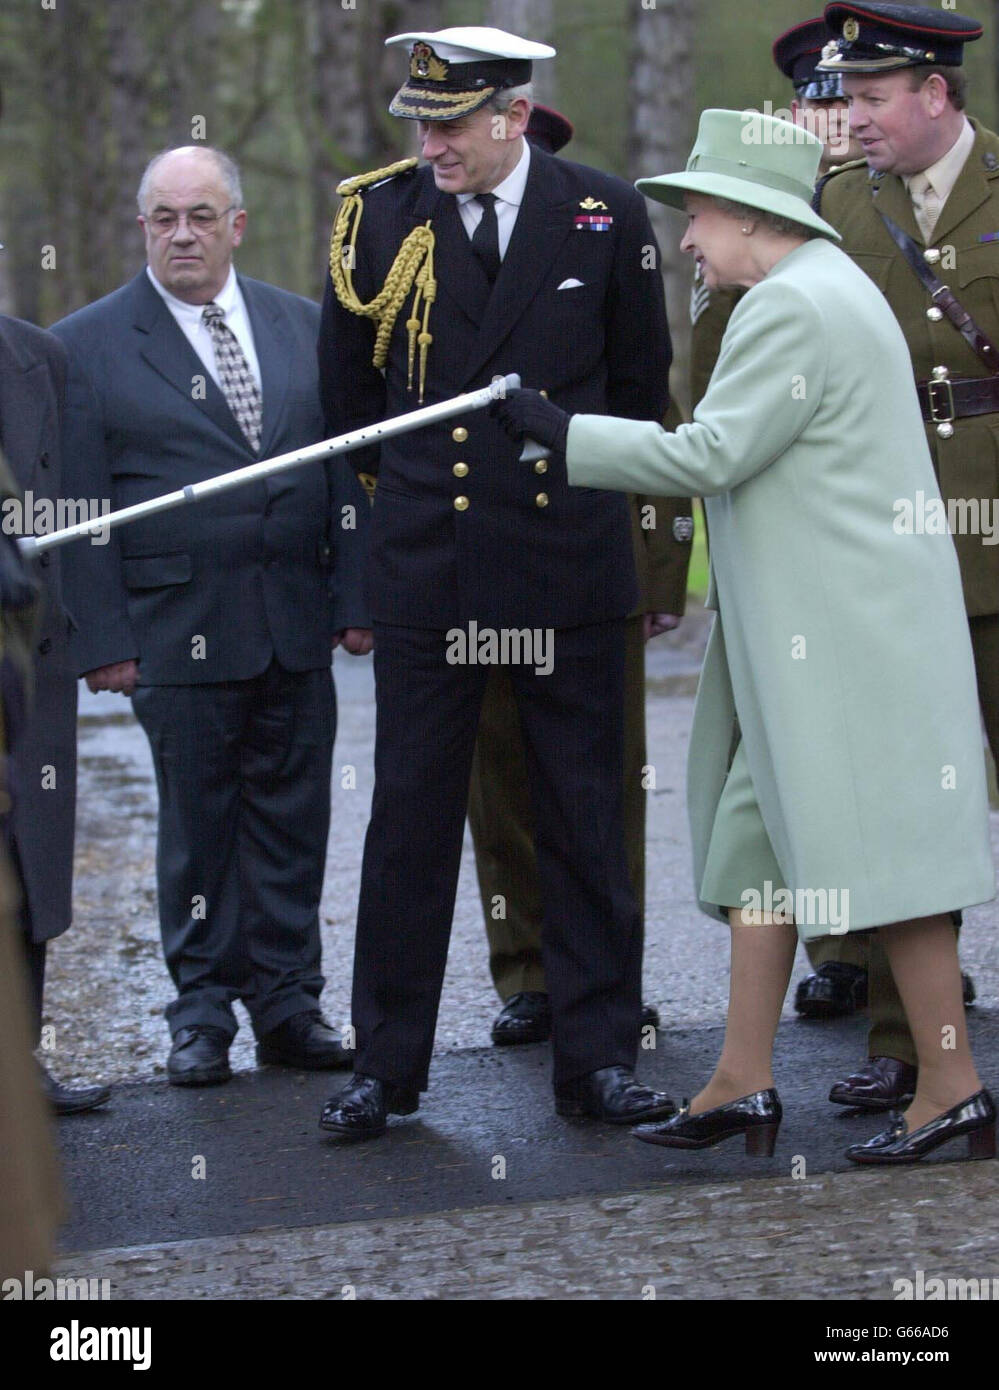 Ihre Königinnen Elizabeth II. Ging mit Hilfe eines Stockes, als sie ihre erste offizielle öffentliche Verlobung durchführte, seit sie vor 16 Tagen an ihrem rechten Knie operiert wurde. * Sie wurde nach der Eröffnung des neuen Sandringham Gates vom Stabschef der Verteidigung, Sir Michael Boyce, begleitet. Stockfoto